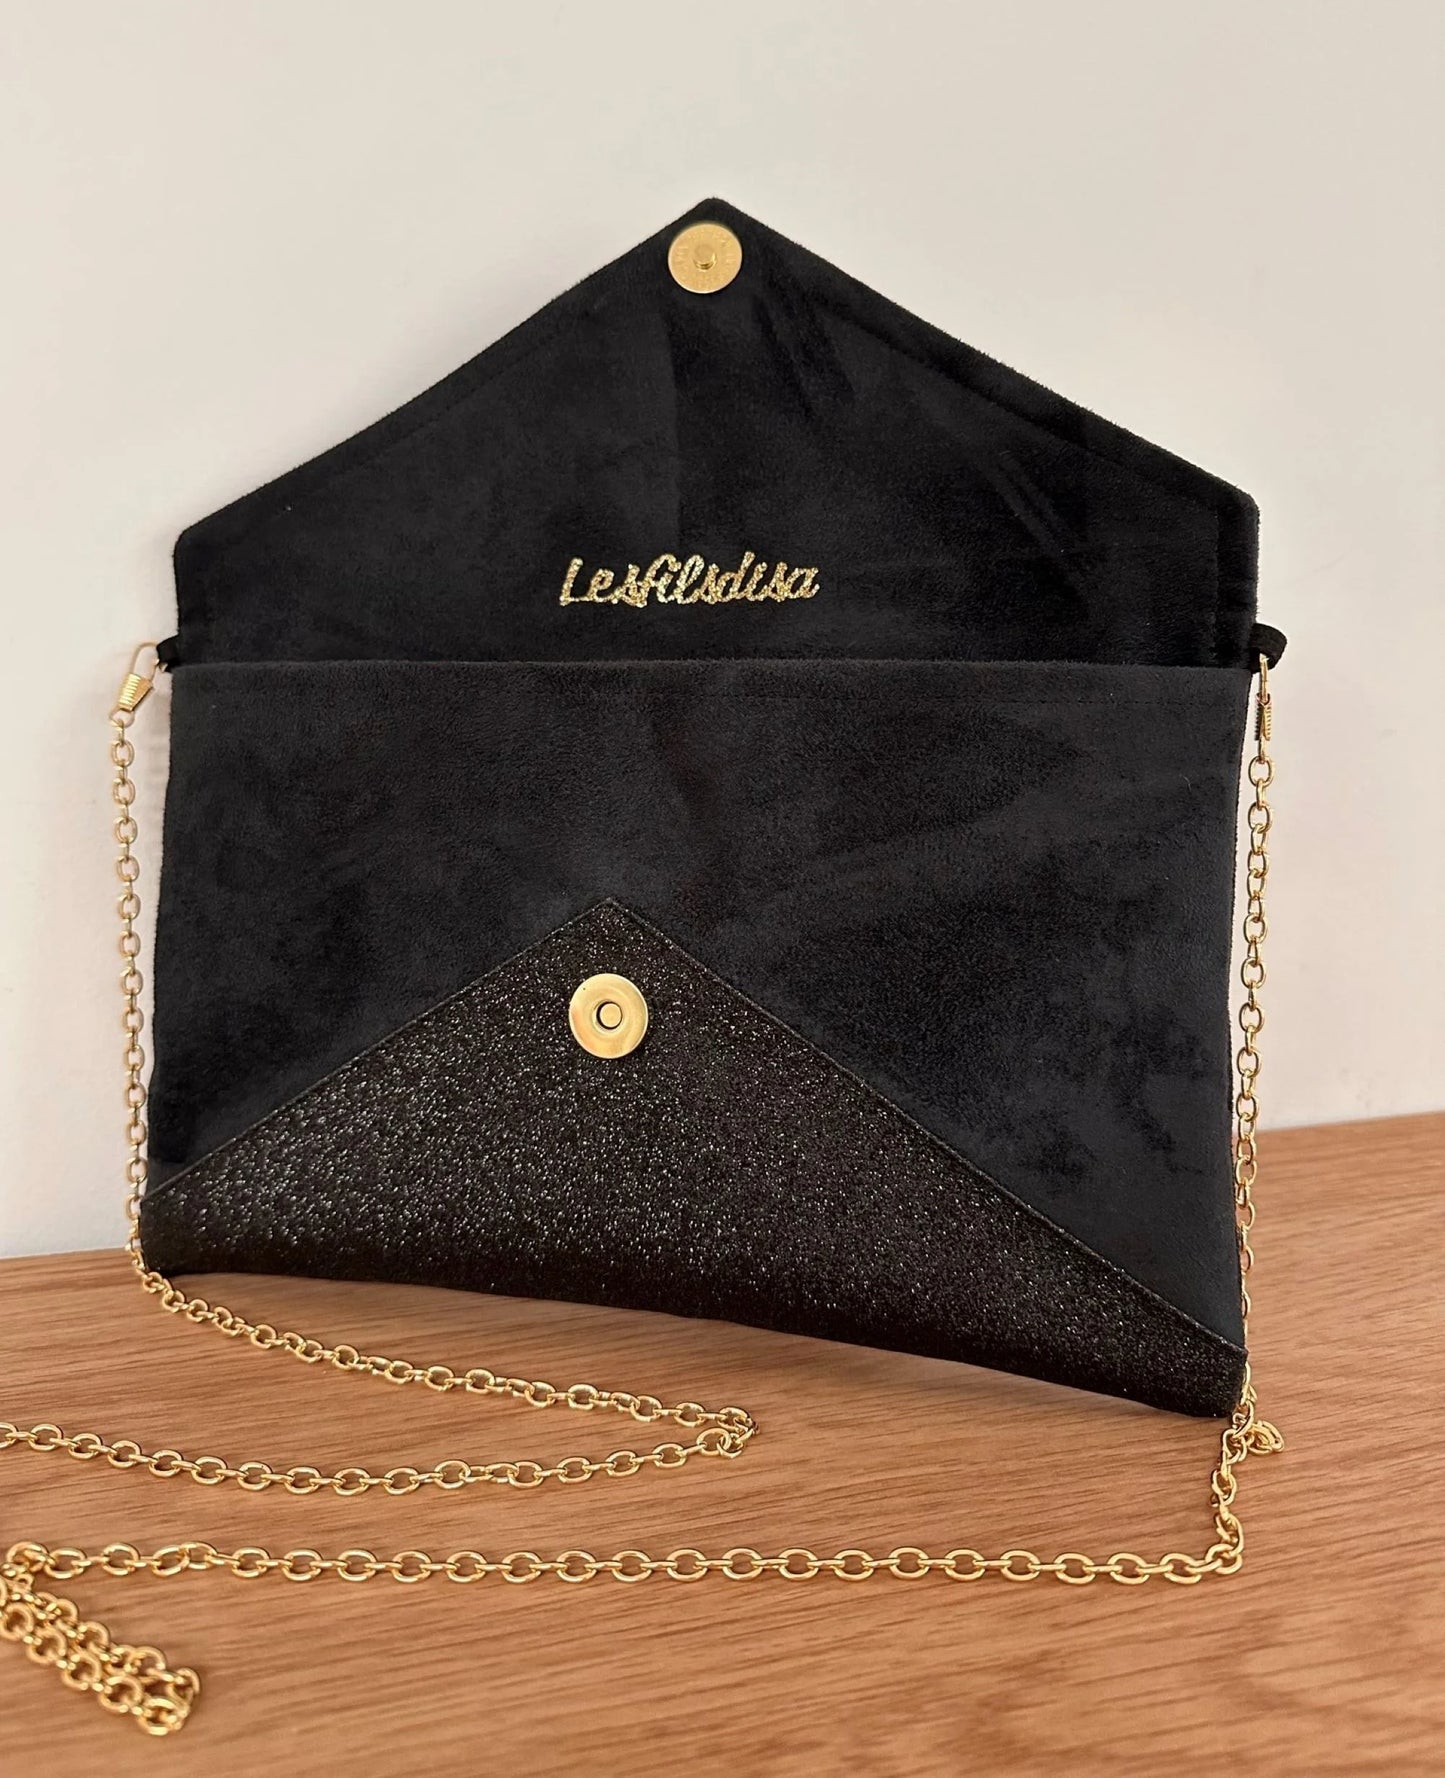 Le sac pochette Isa noir et doré à paillettes, ouvert.